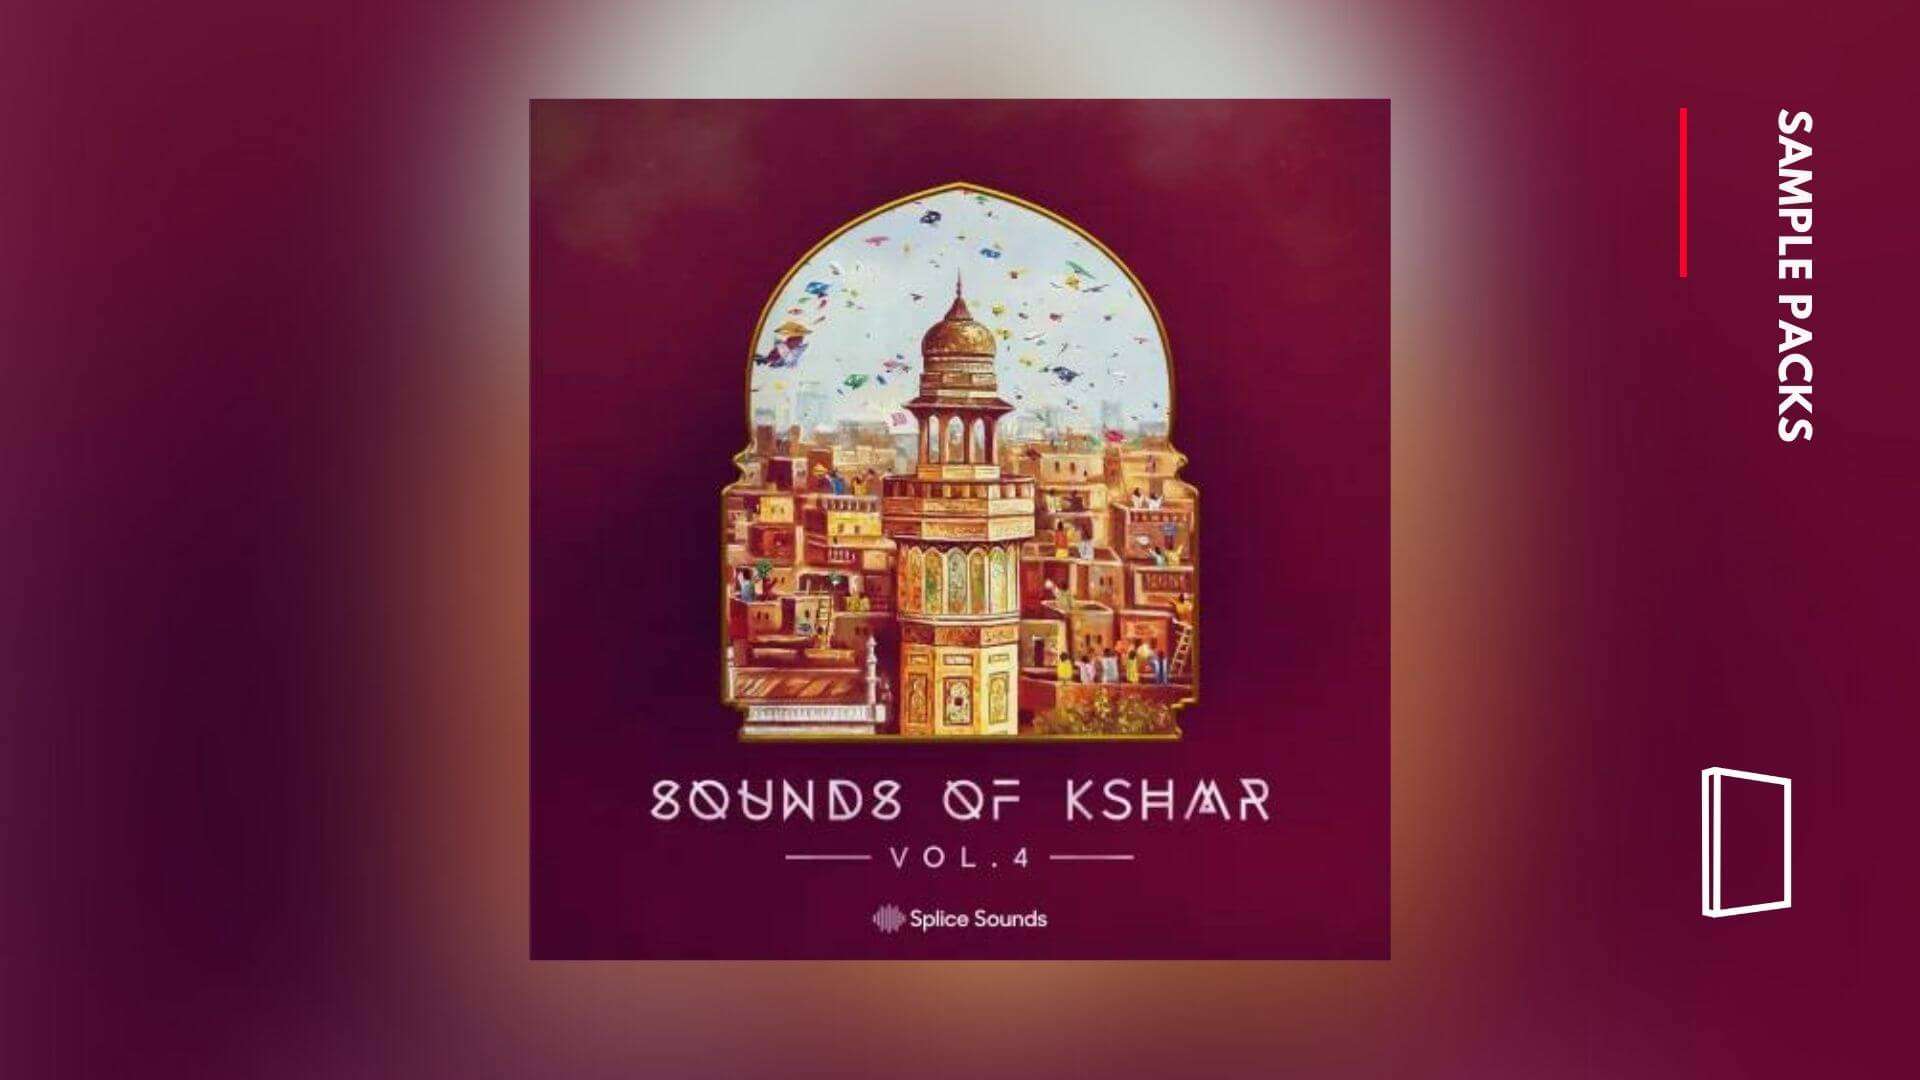 Sounds of KSHMR Vol.4 – latest in popular sample pack series hits Splice